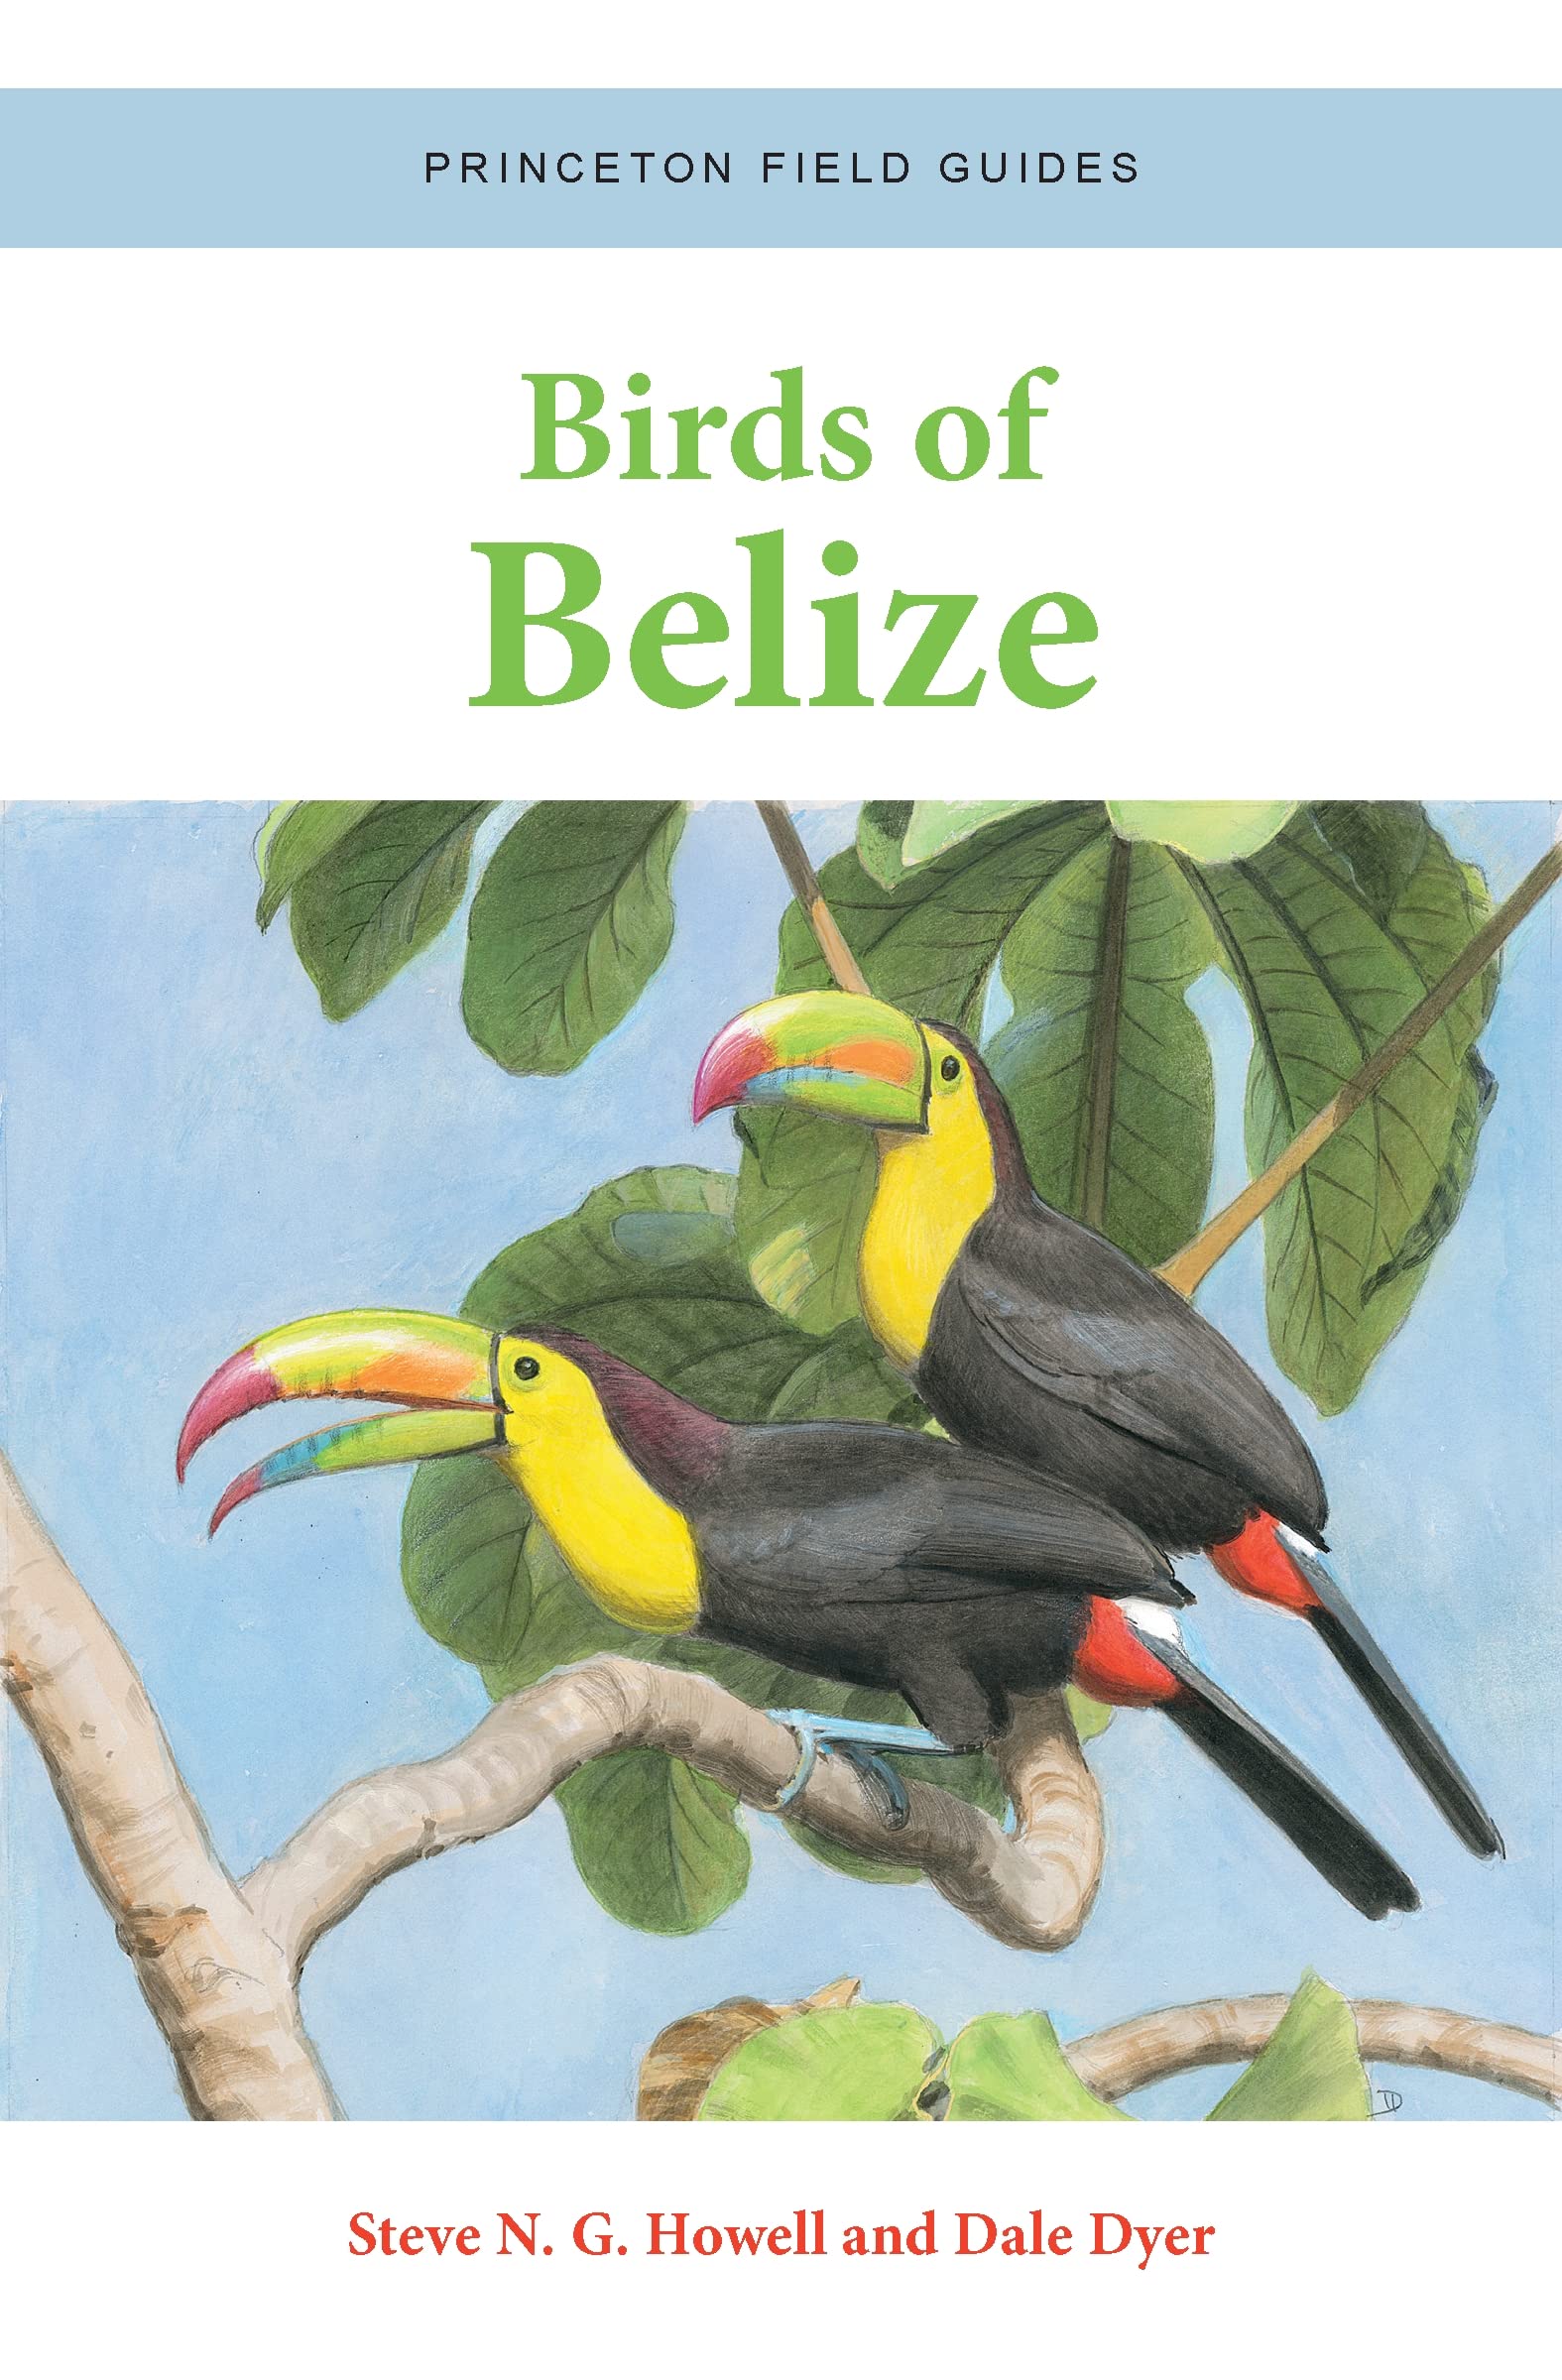 Online bestellen: Vogelgids Birds of Belize | Princeton University